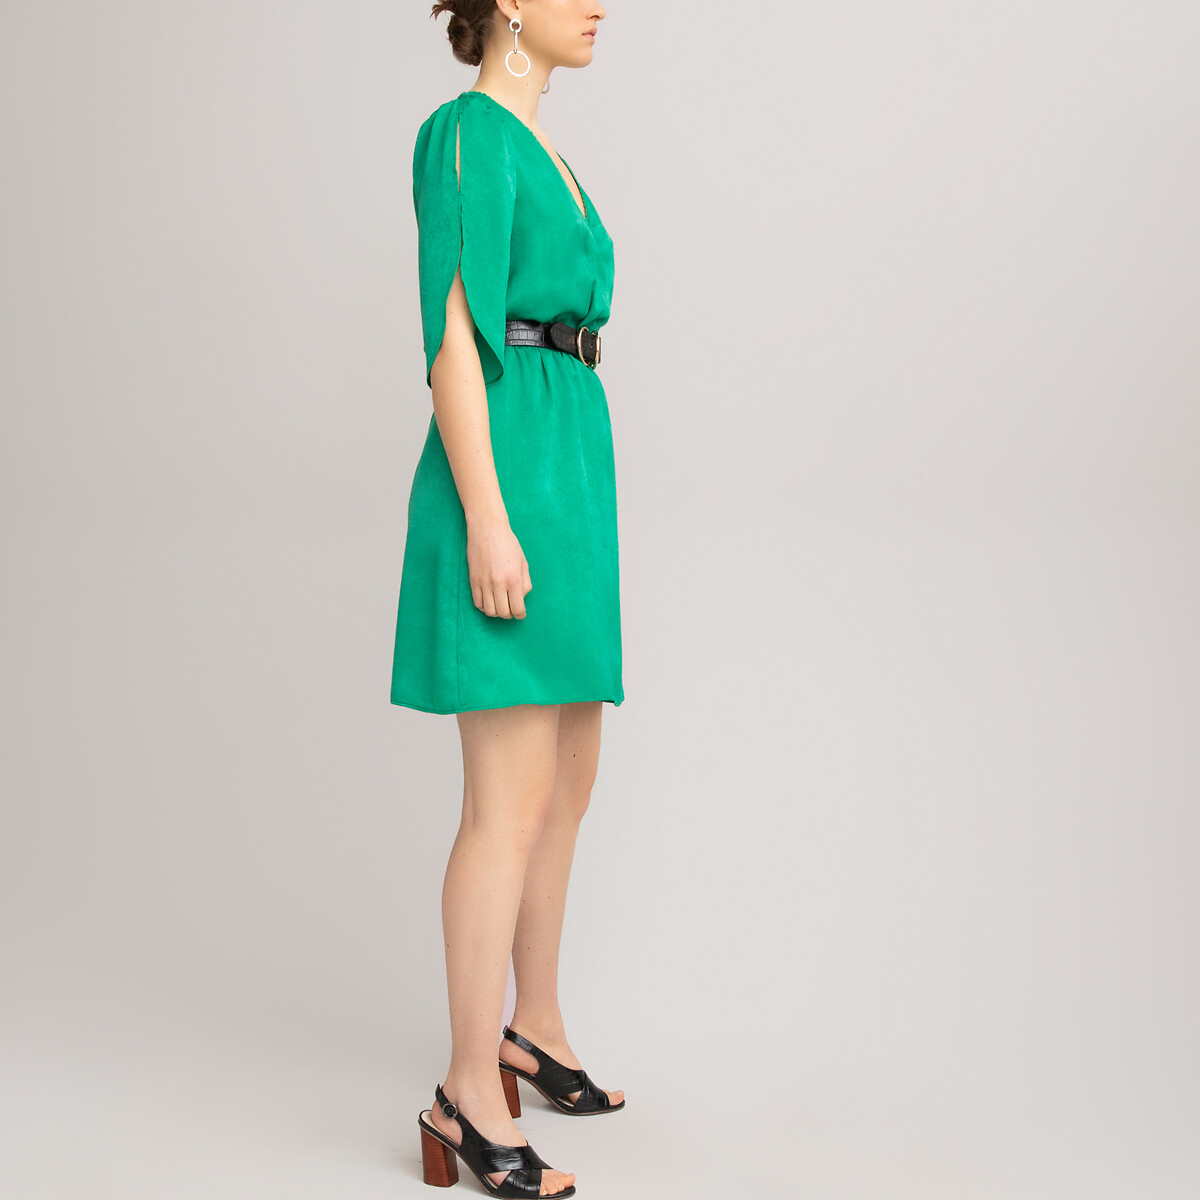 Платье LaRedoute Короткое с запахом короткие рукава 48 (FR) - 54 (RUS) зеленый, размер 48 (FR) - 54 (RUS) Короткое с запахом короткие рукава 48 (FR) - 54 (RUS) зеленый - фото 2